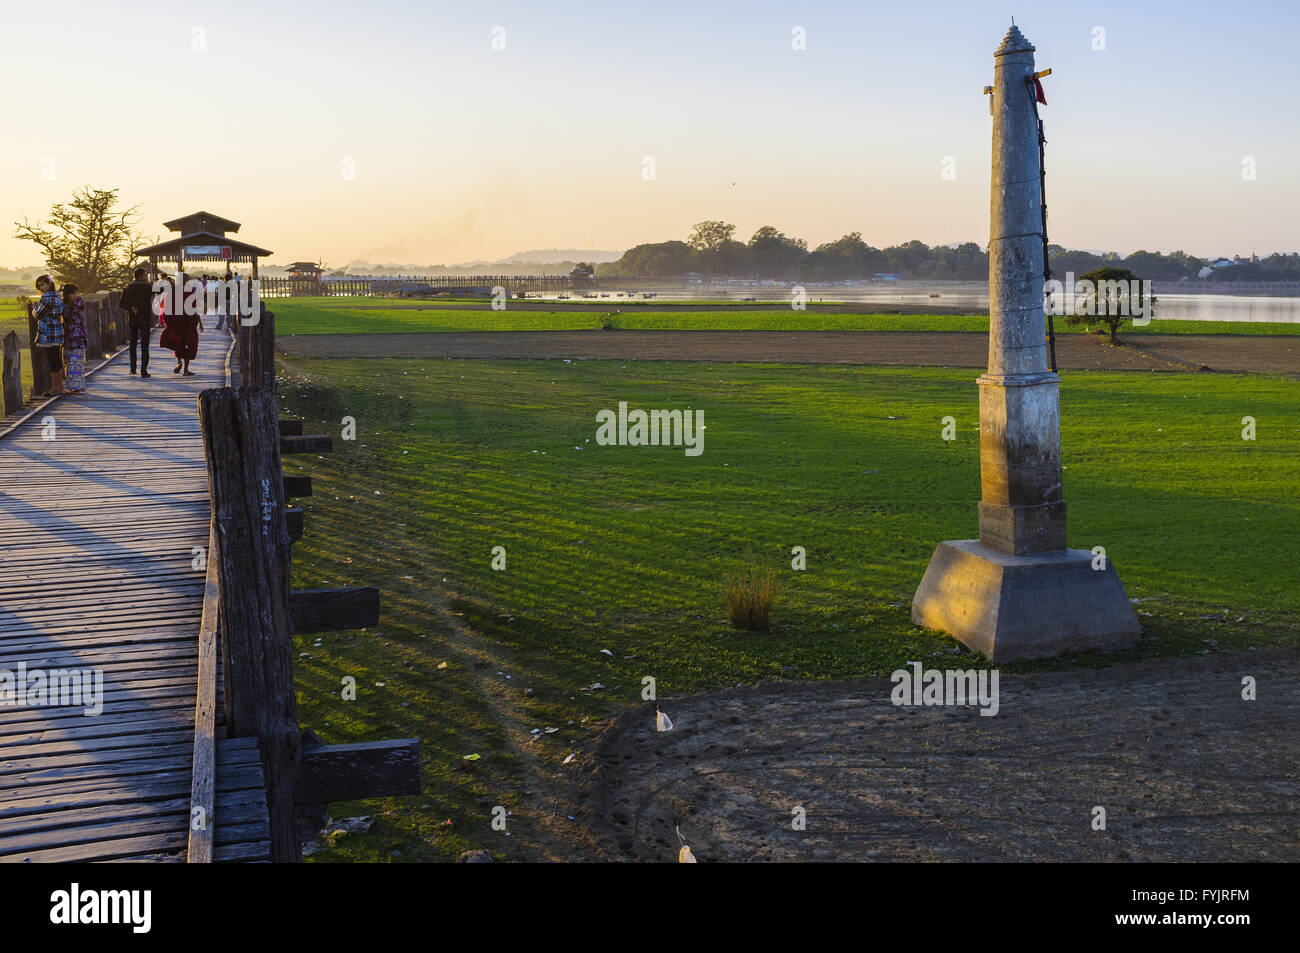 Säule am U Bein Brücke in der Nähe von Amarapura, Myanmar Stockfoto